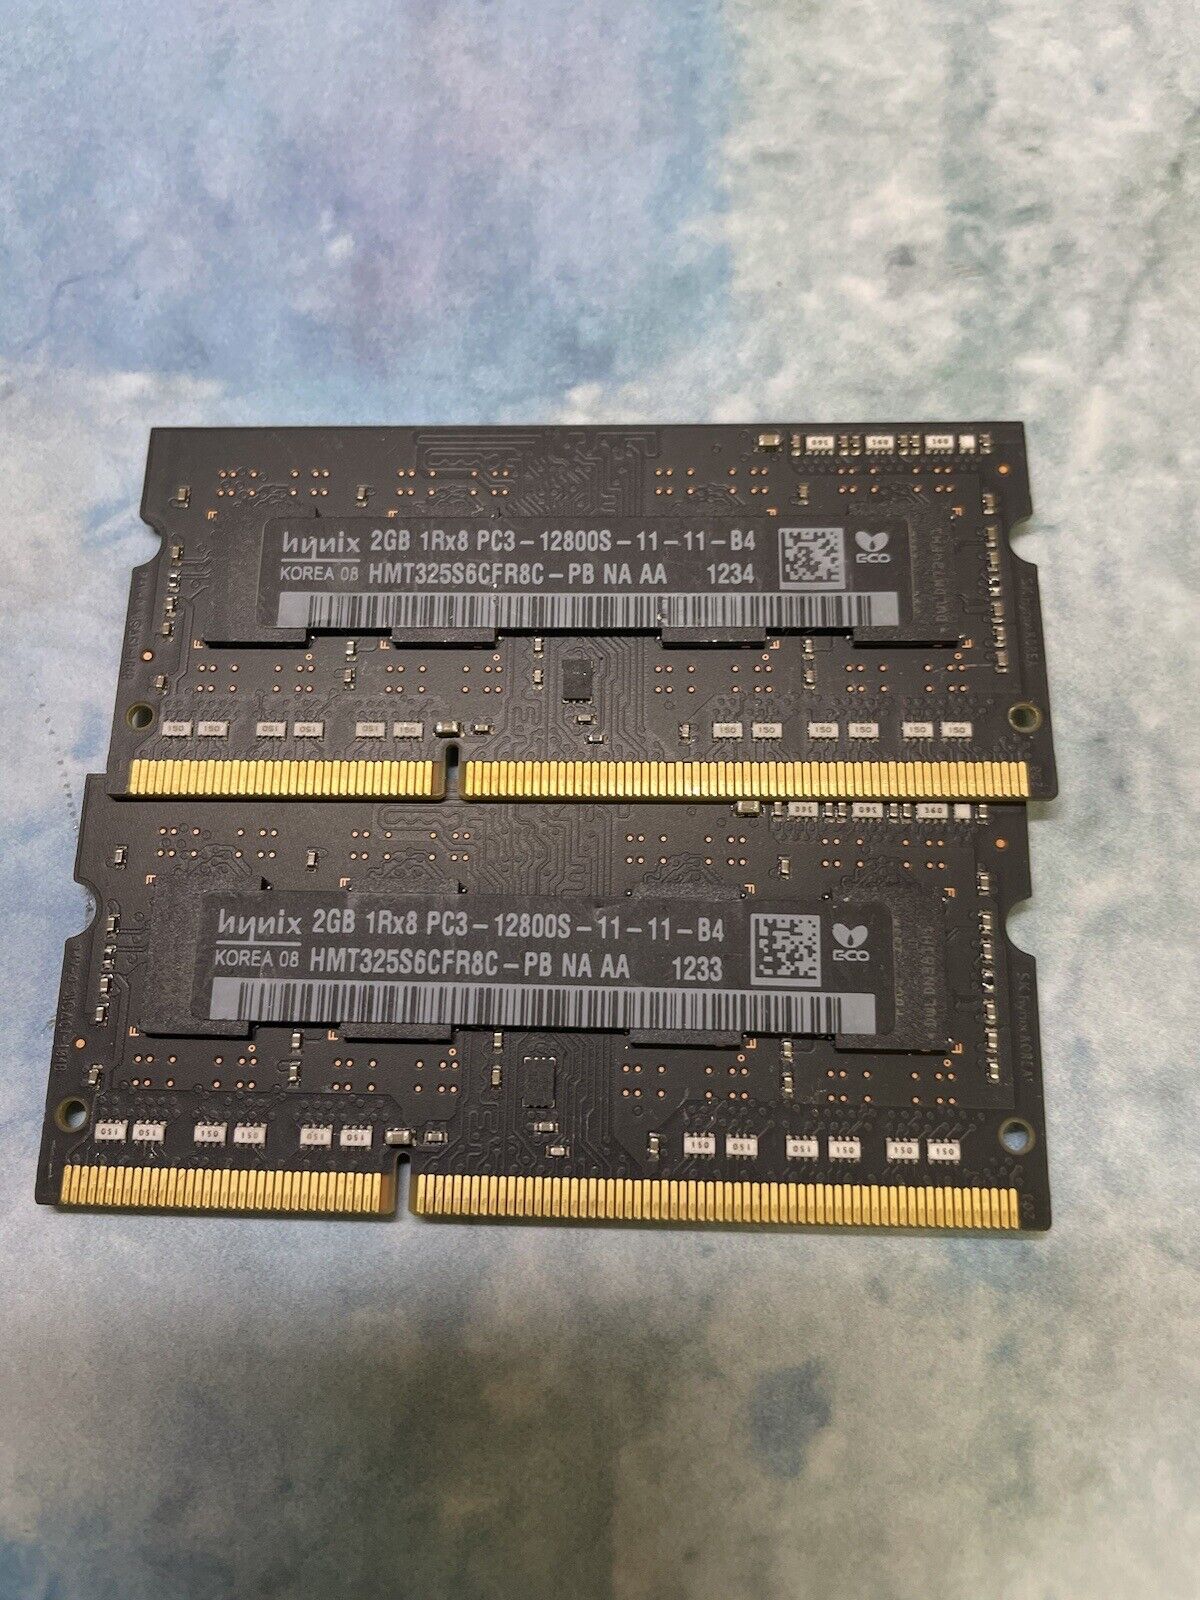 SK Hynix 2GB 1Rx8 PC3-12800s DDR3